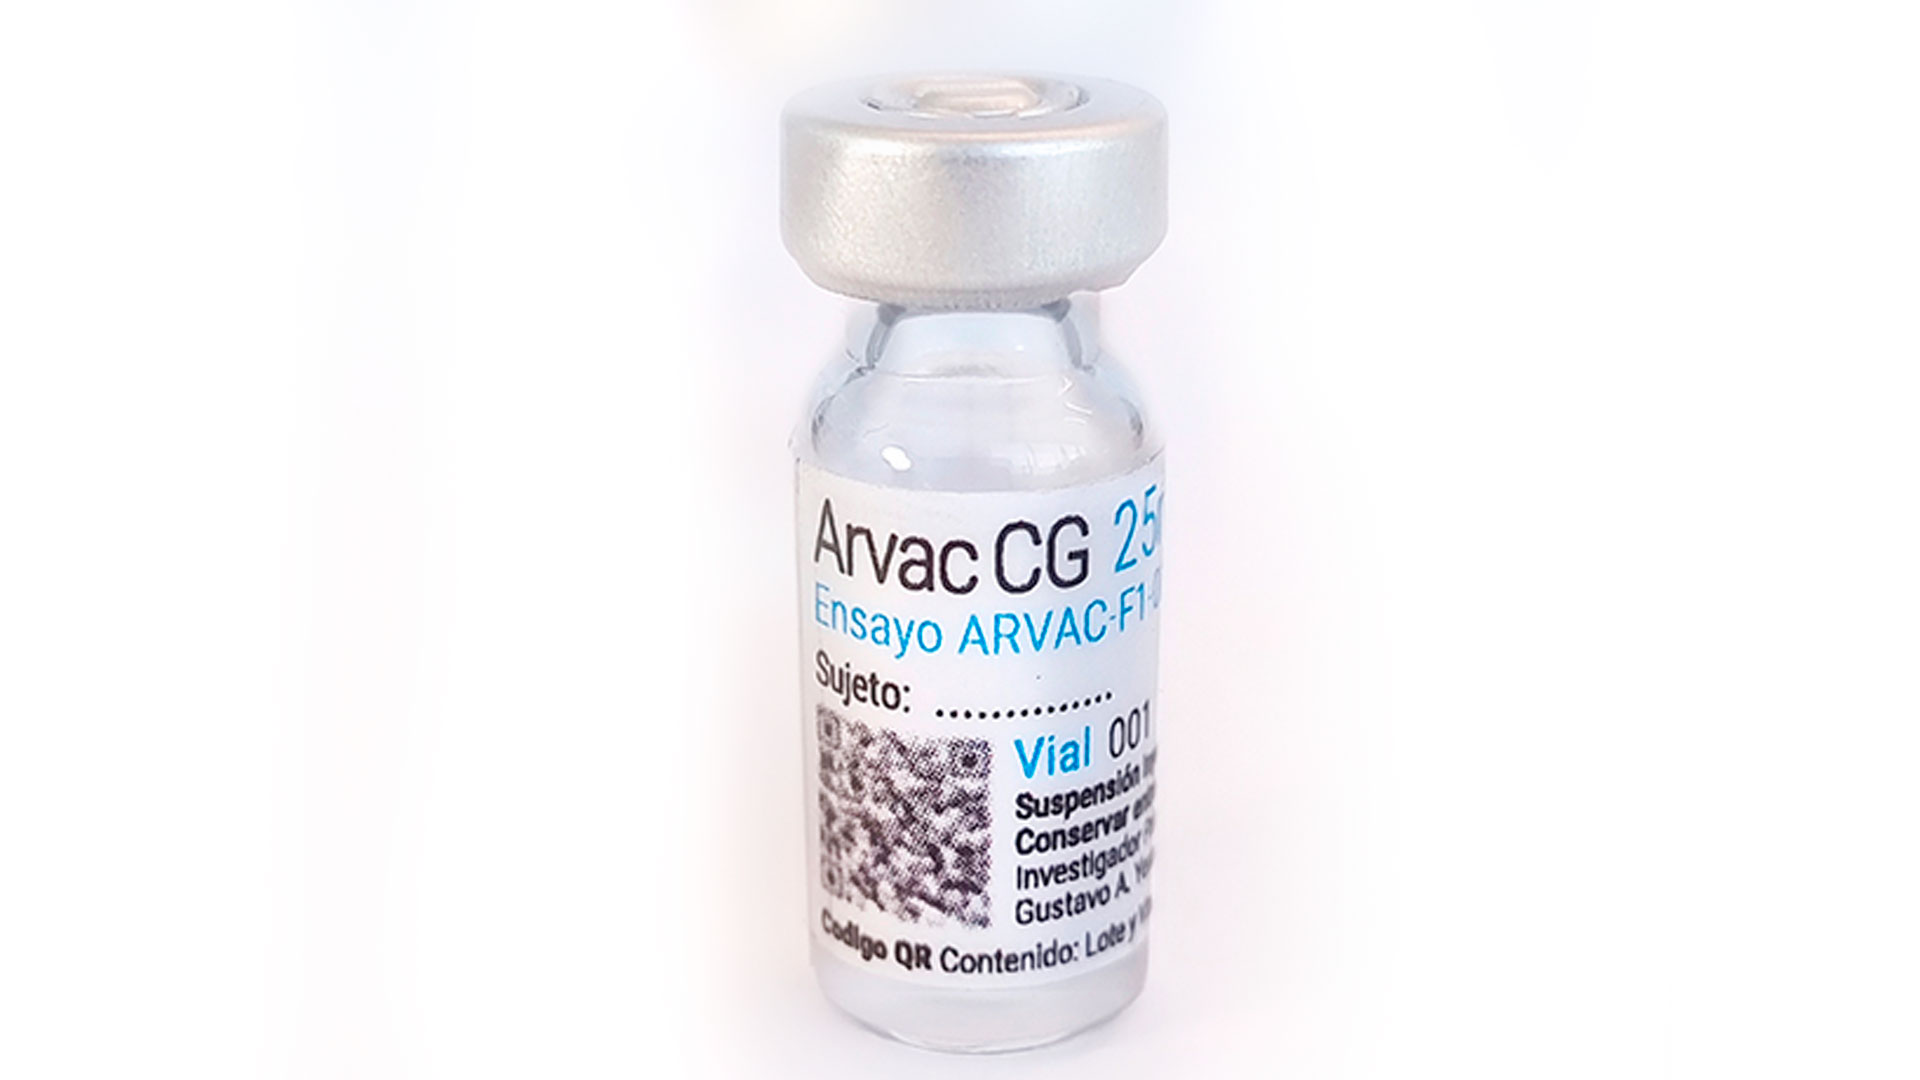 Le développement national ARVAC Cecilia Grierson d'un vaccin bivalent progresse rapidement, mais il doit encore passer par l'une des phases de recherche